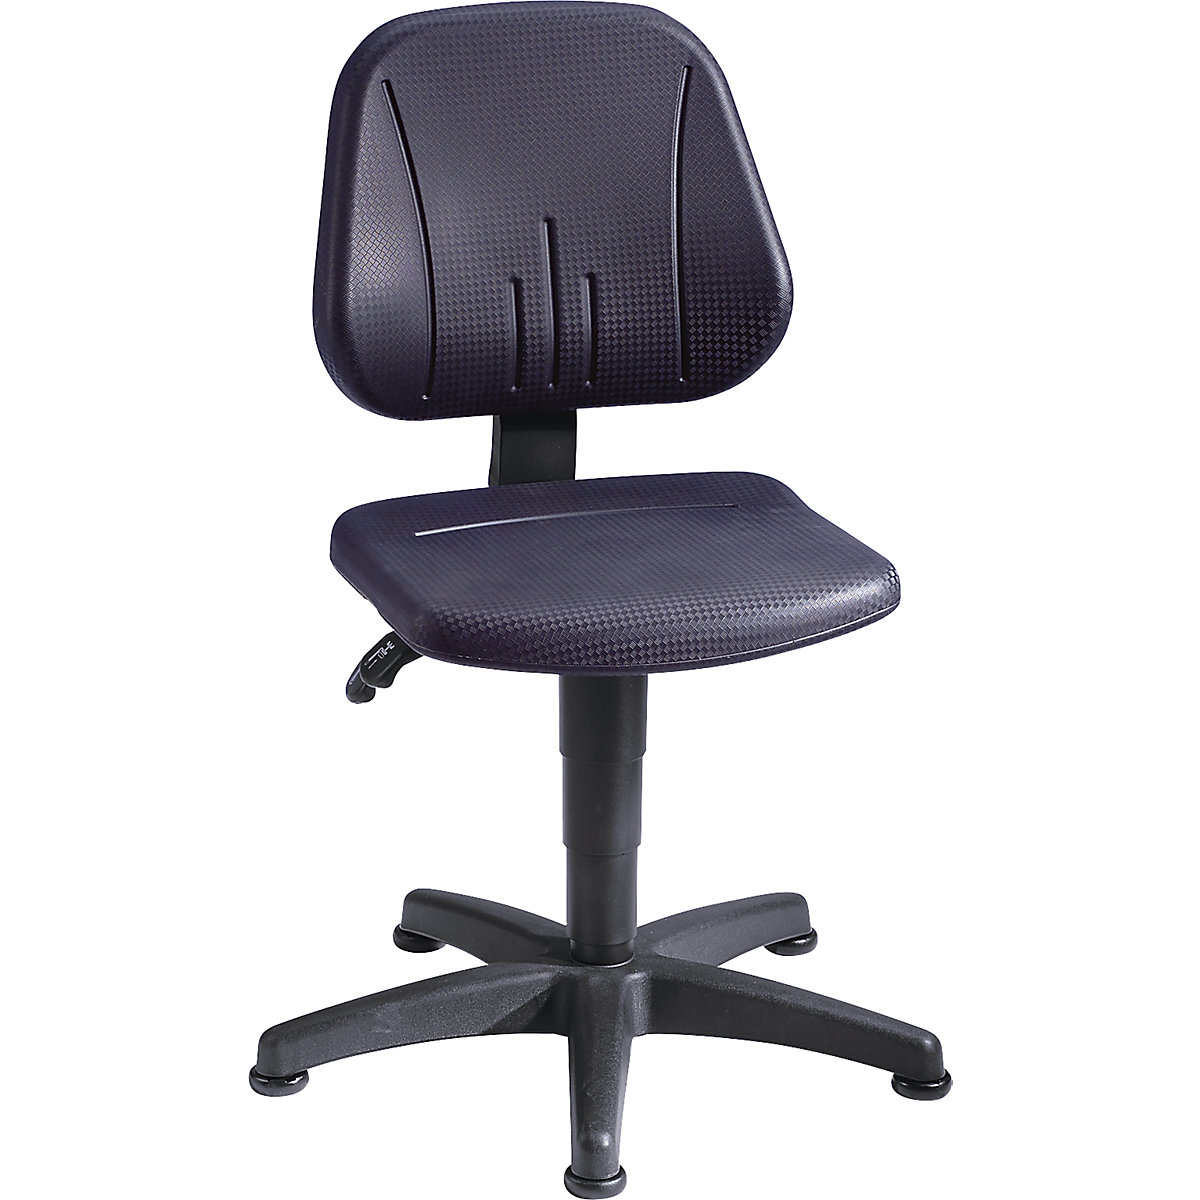 Pracovní otočná židle – bimos, s přestavováním výšky plynovým pístem, PU pěna, černá barva, s podlahovými patkami-7